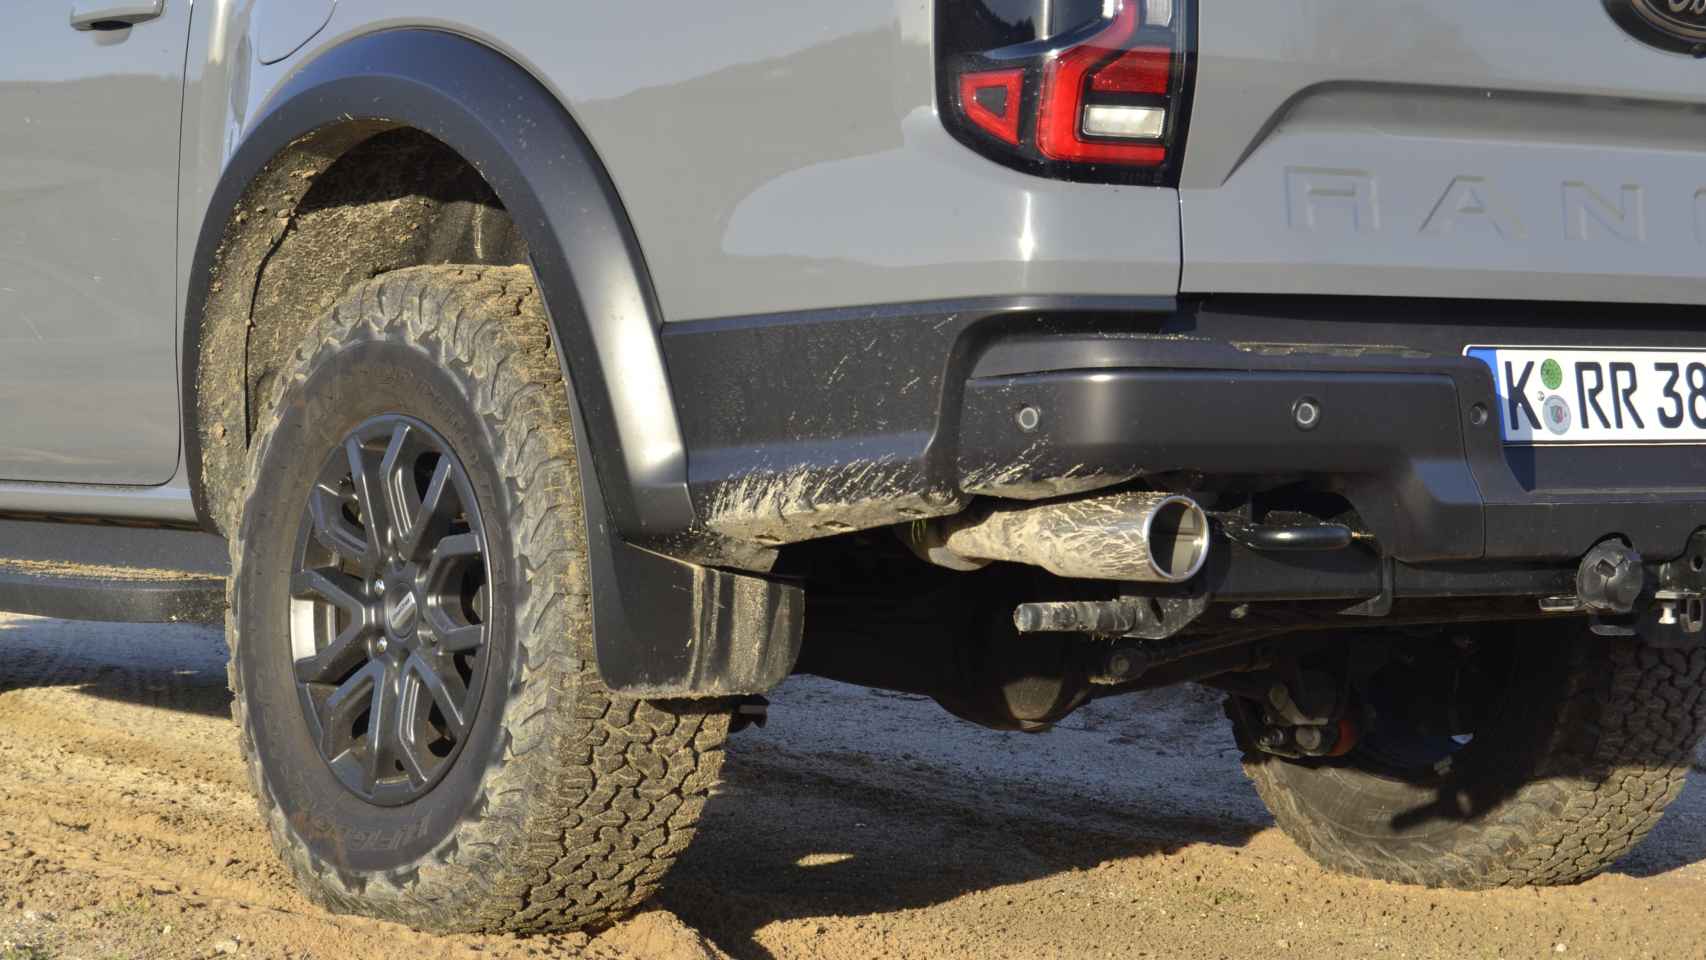 El Ford Ranger Raptor cuenta con dos tubos de escape, así como ganchos de remolque.